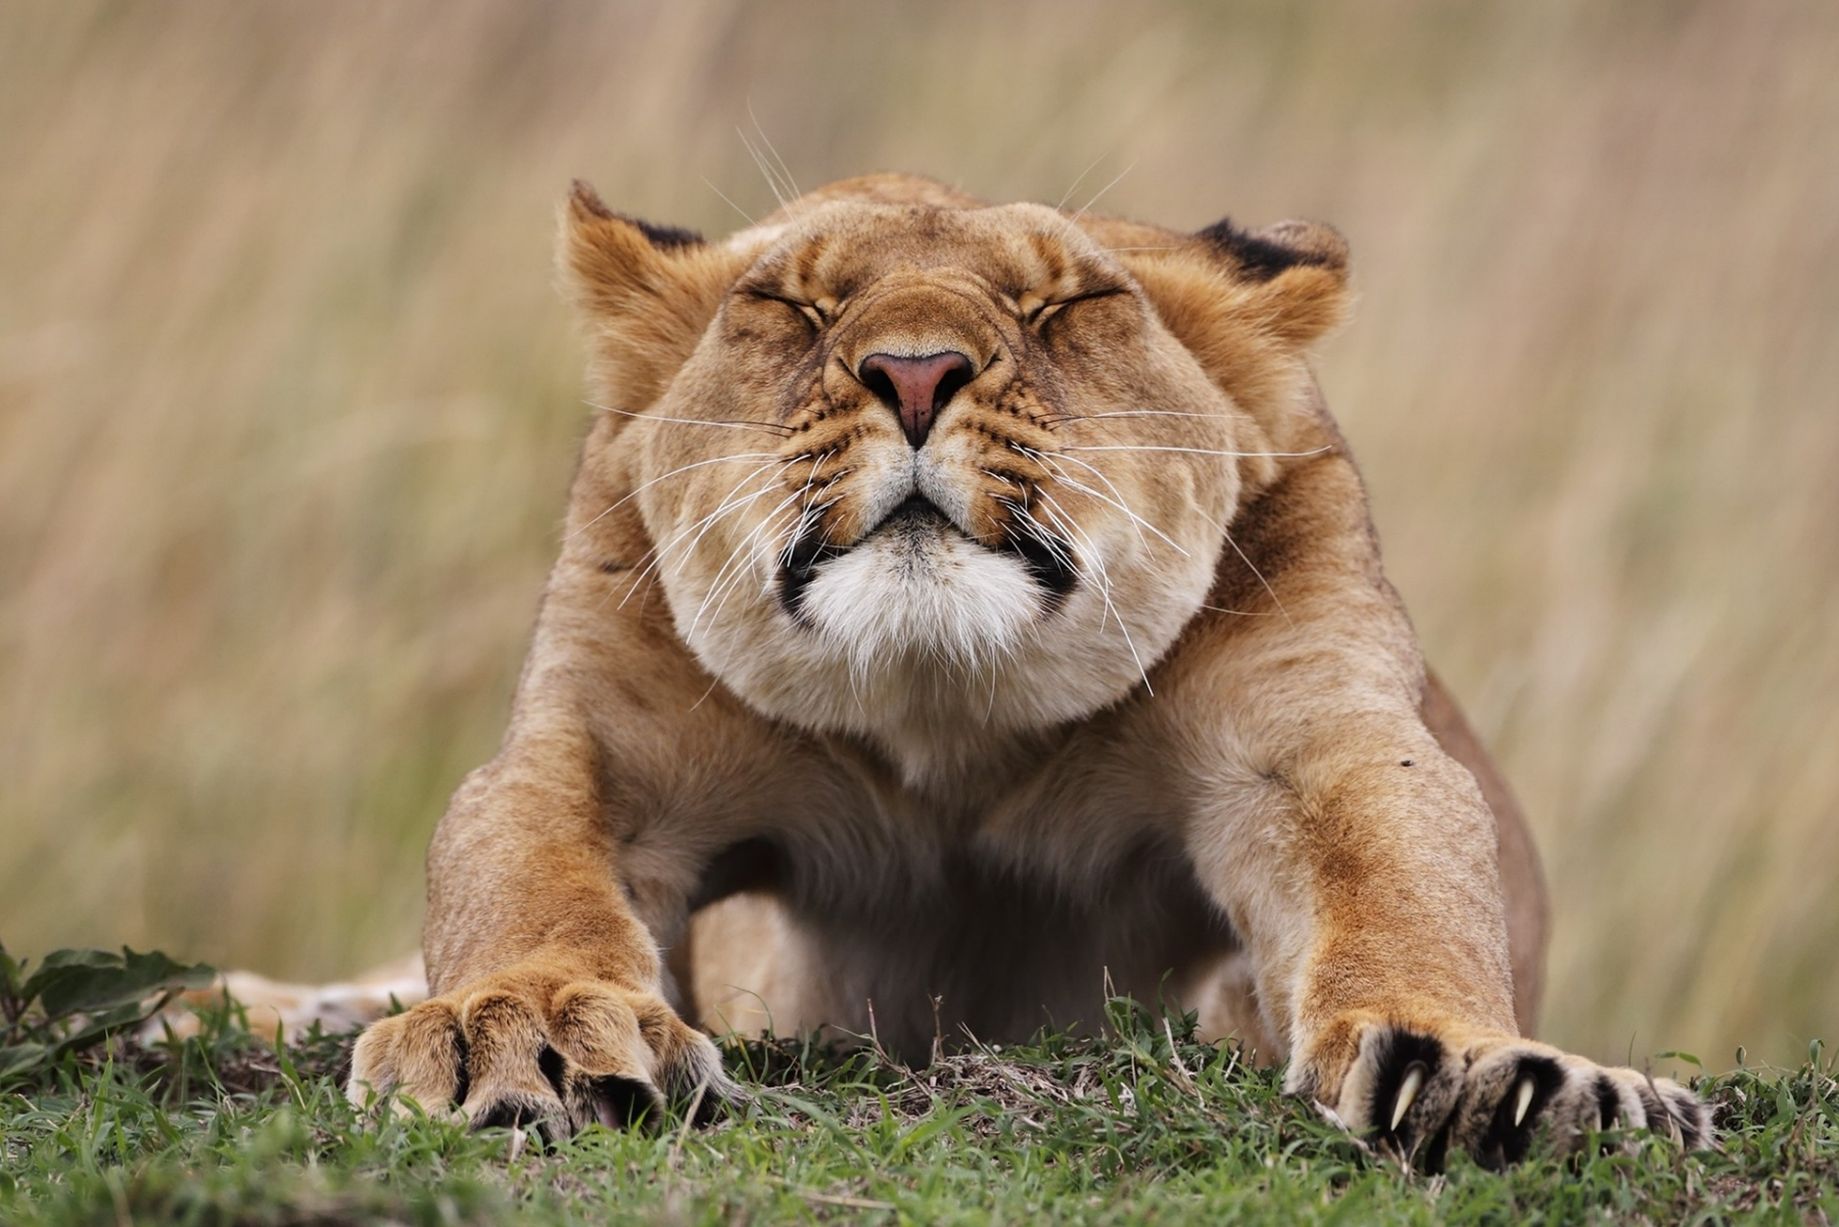 Ποιος είπε ότι τα λιοντάρια δεν... χουζουρεύουν; Τέντωμα και μετά κυνήγι! / Stephan Tuengler